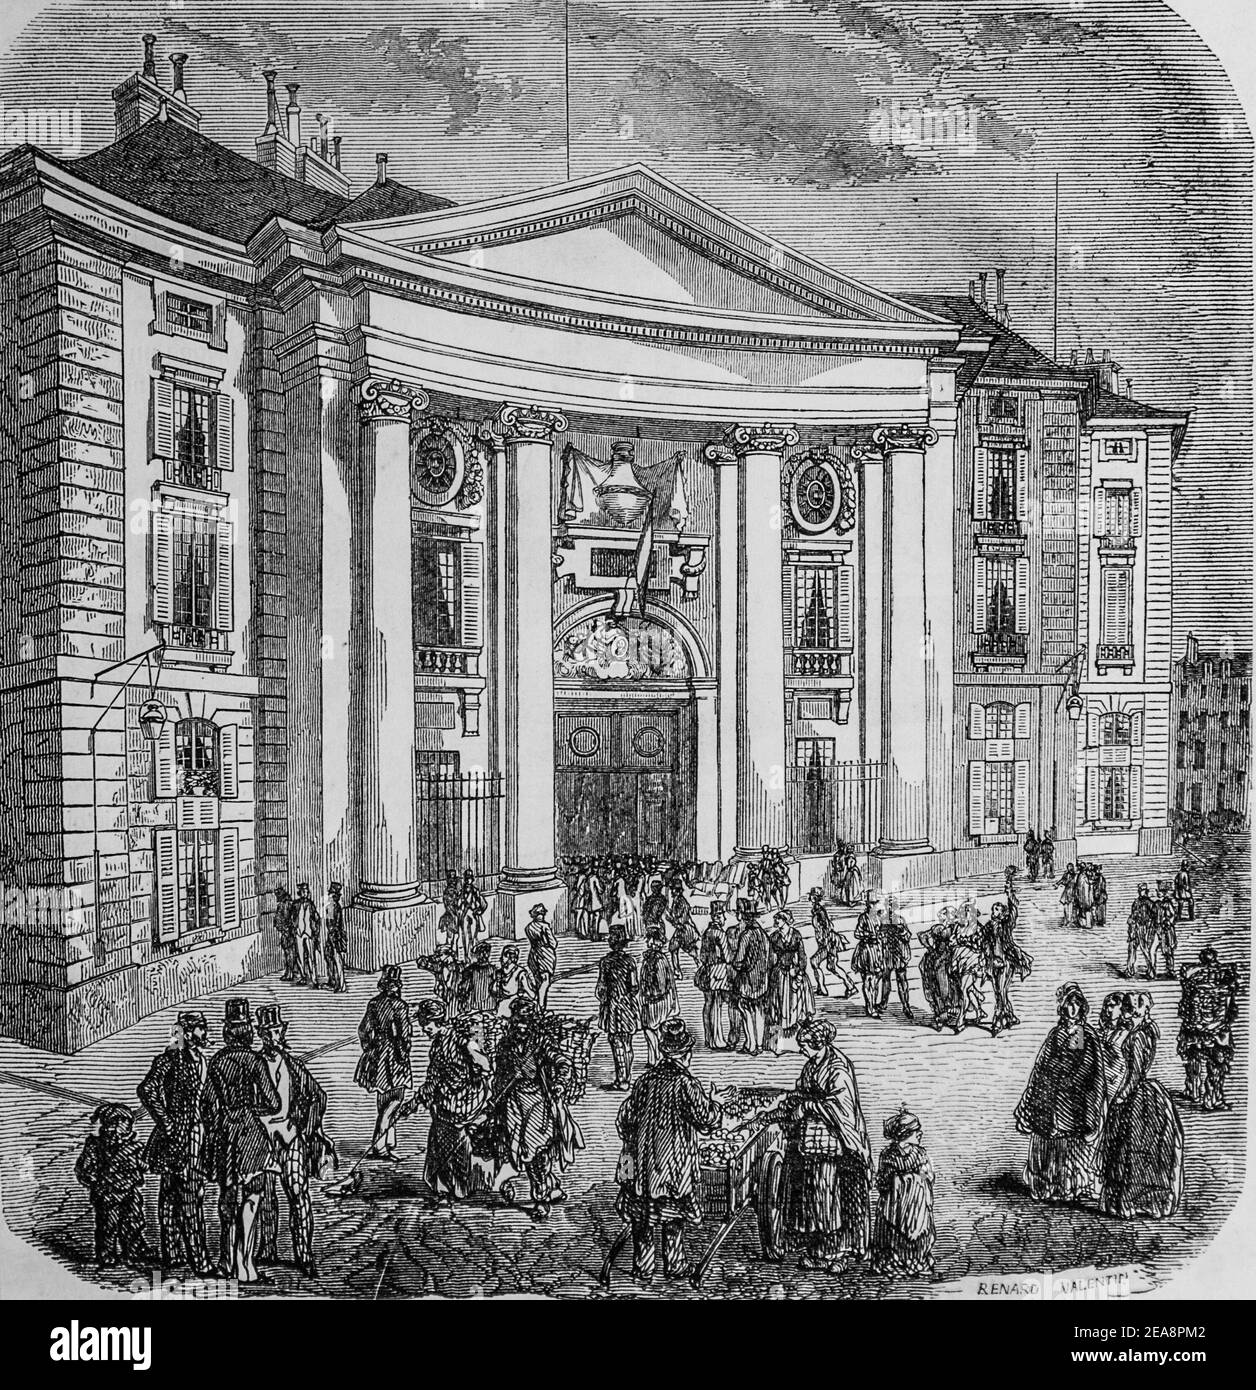 ecole de droit, tableau de paris par edmond texier,éditeur paulin et le chevalier 1852 Banque D'Images